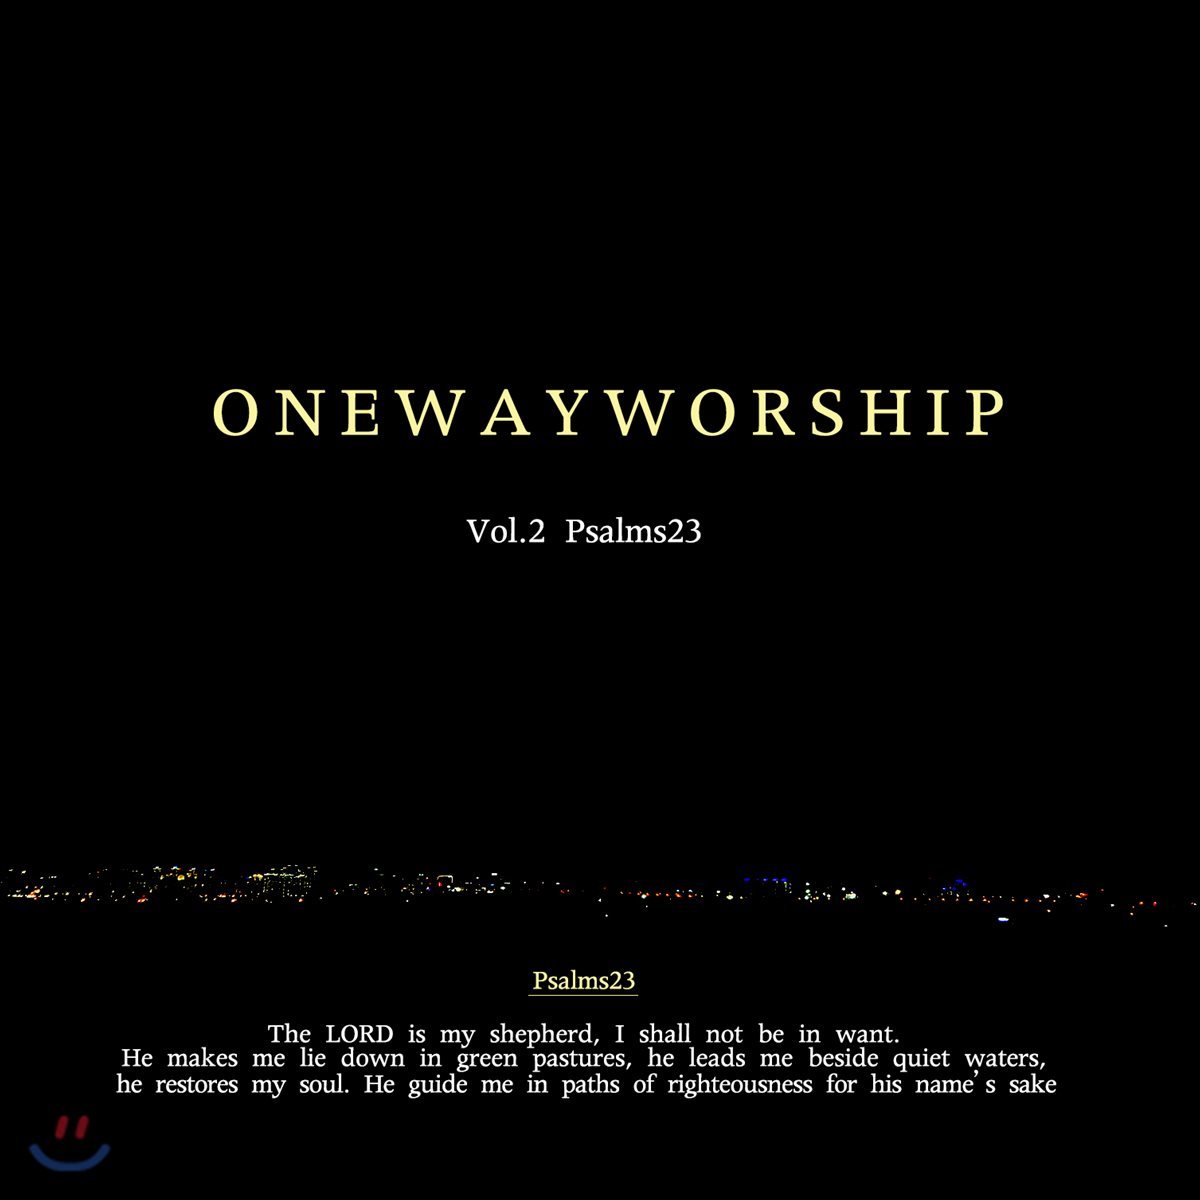 원웨이워십 (Oneway Worship) 2집 - Psalms 23